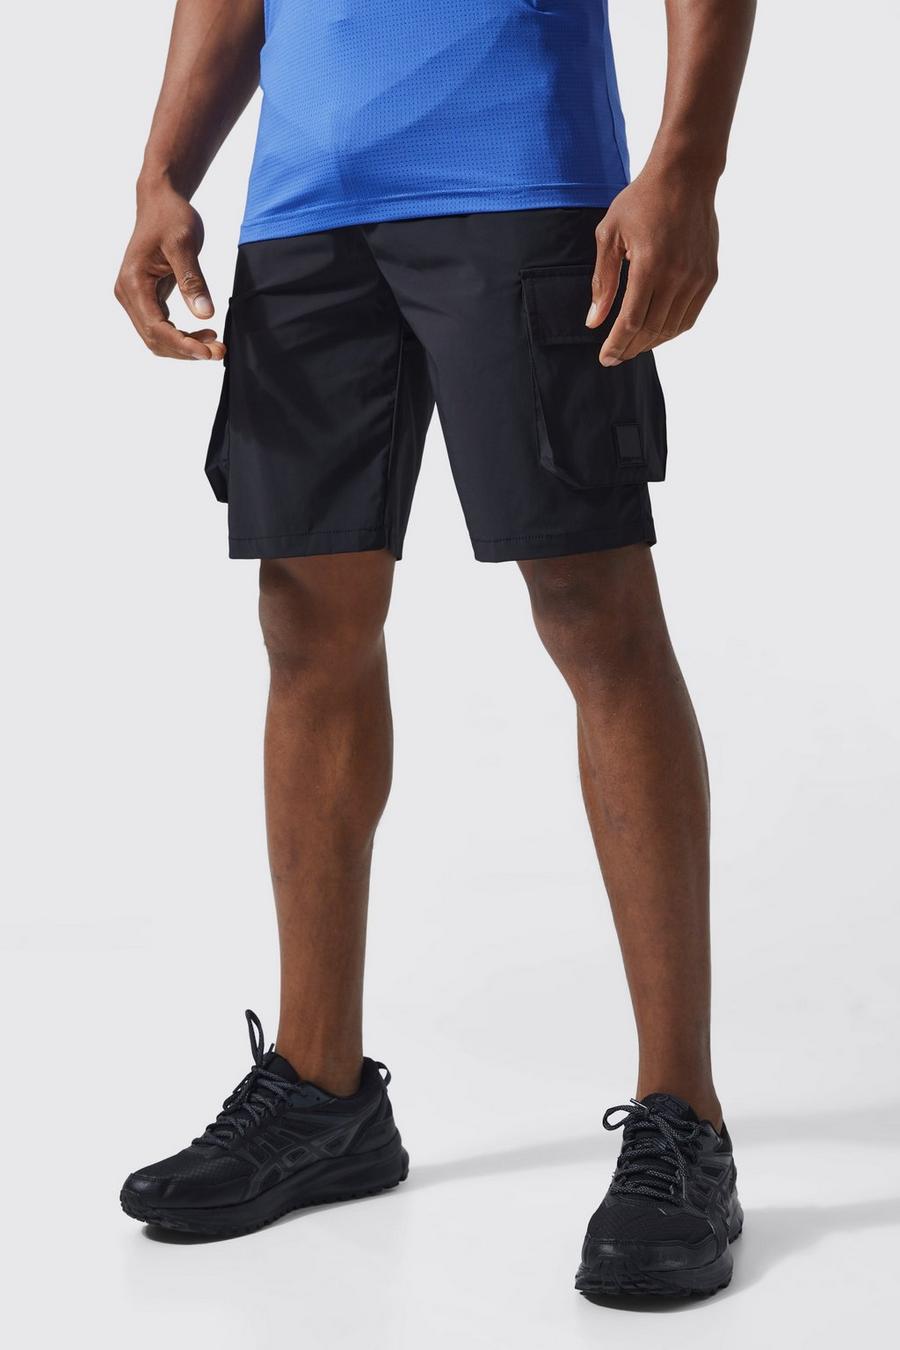 Pantaloncini da allenamento Man Active Gym con tasche Cargo, Black